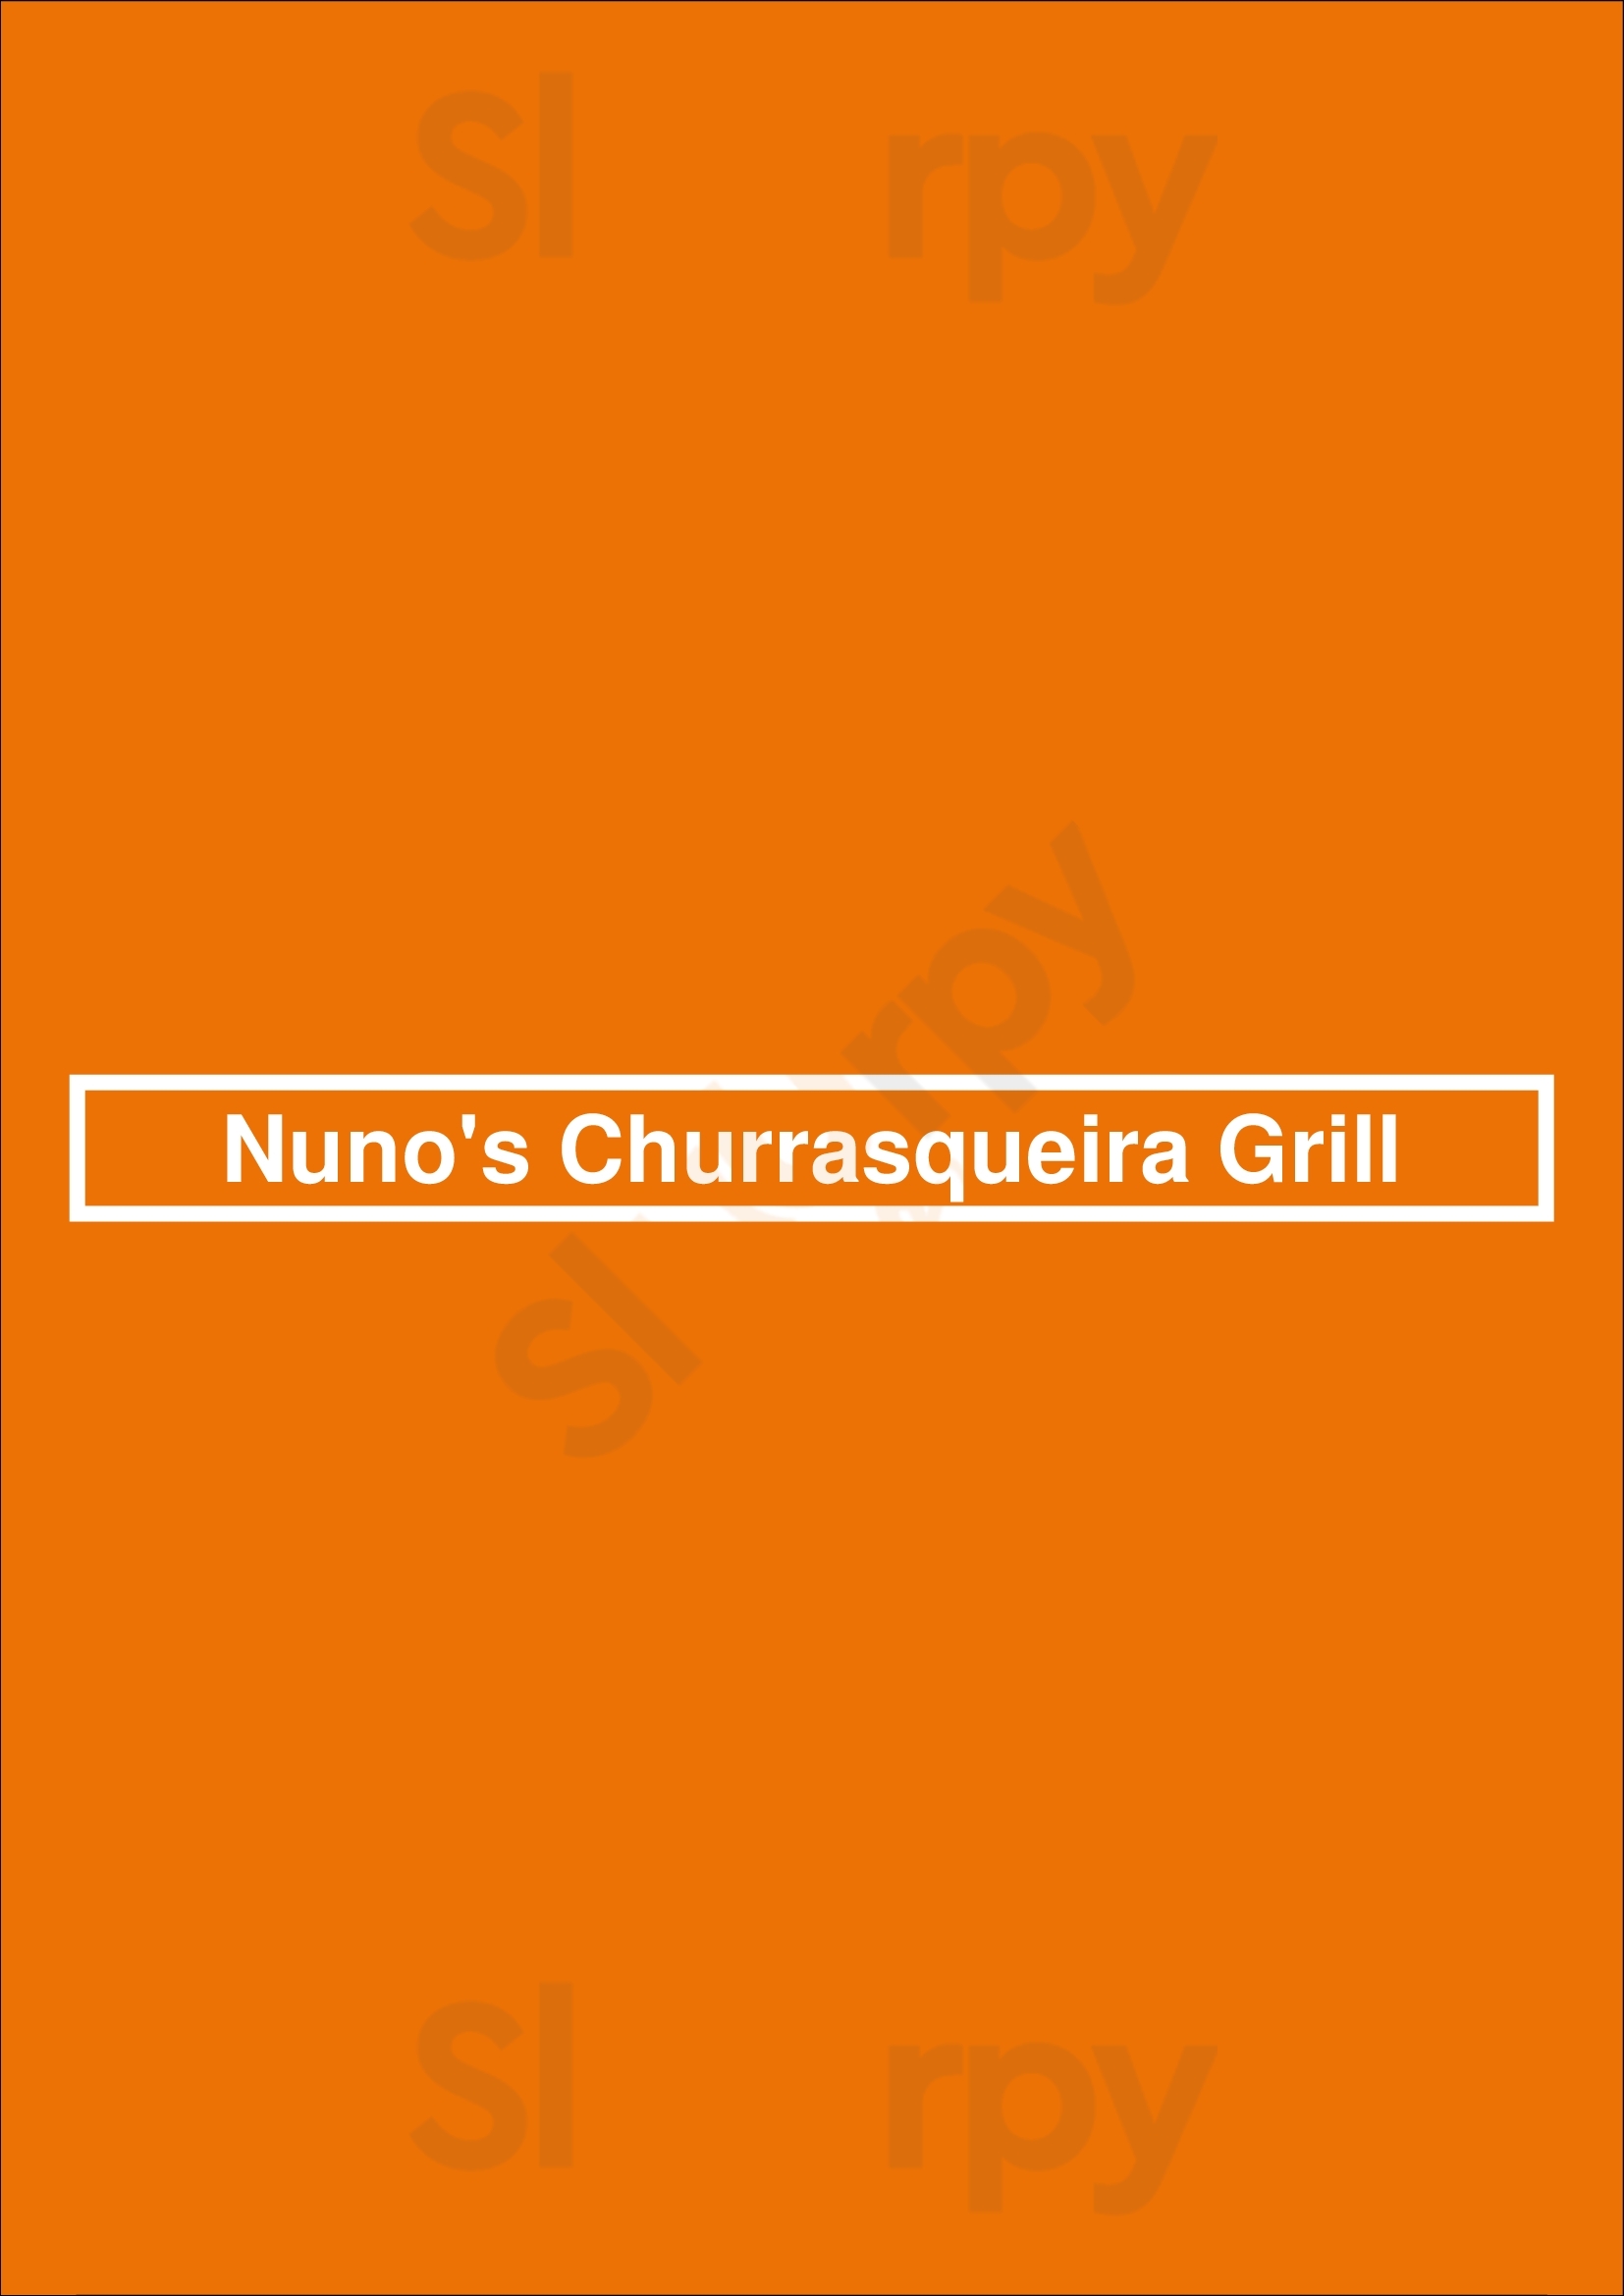 Nuno's Churrasqueira Grill Toronto Menu - 1